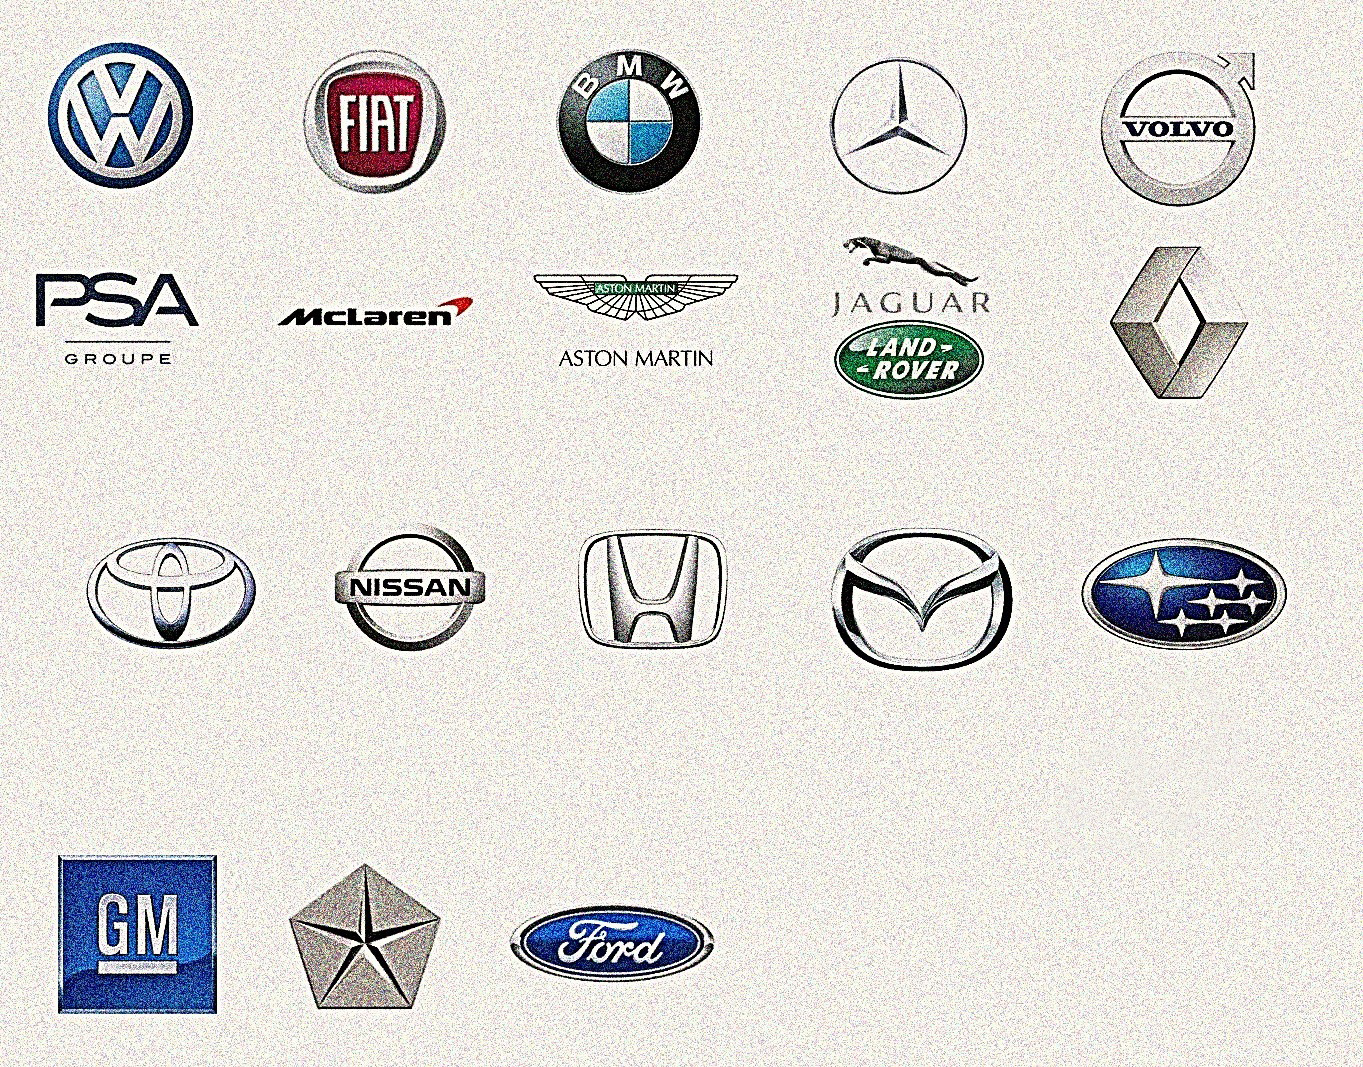 Фирмы производителей автомобилей. Марки автомобилей. Эмблемы автомобилей. Знаки марок автомобилей. Логотипы марок автомобилей.